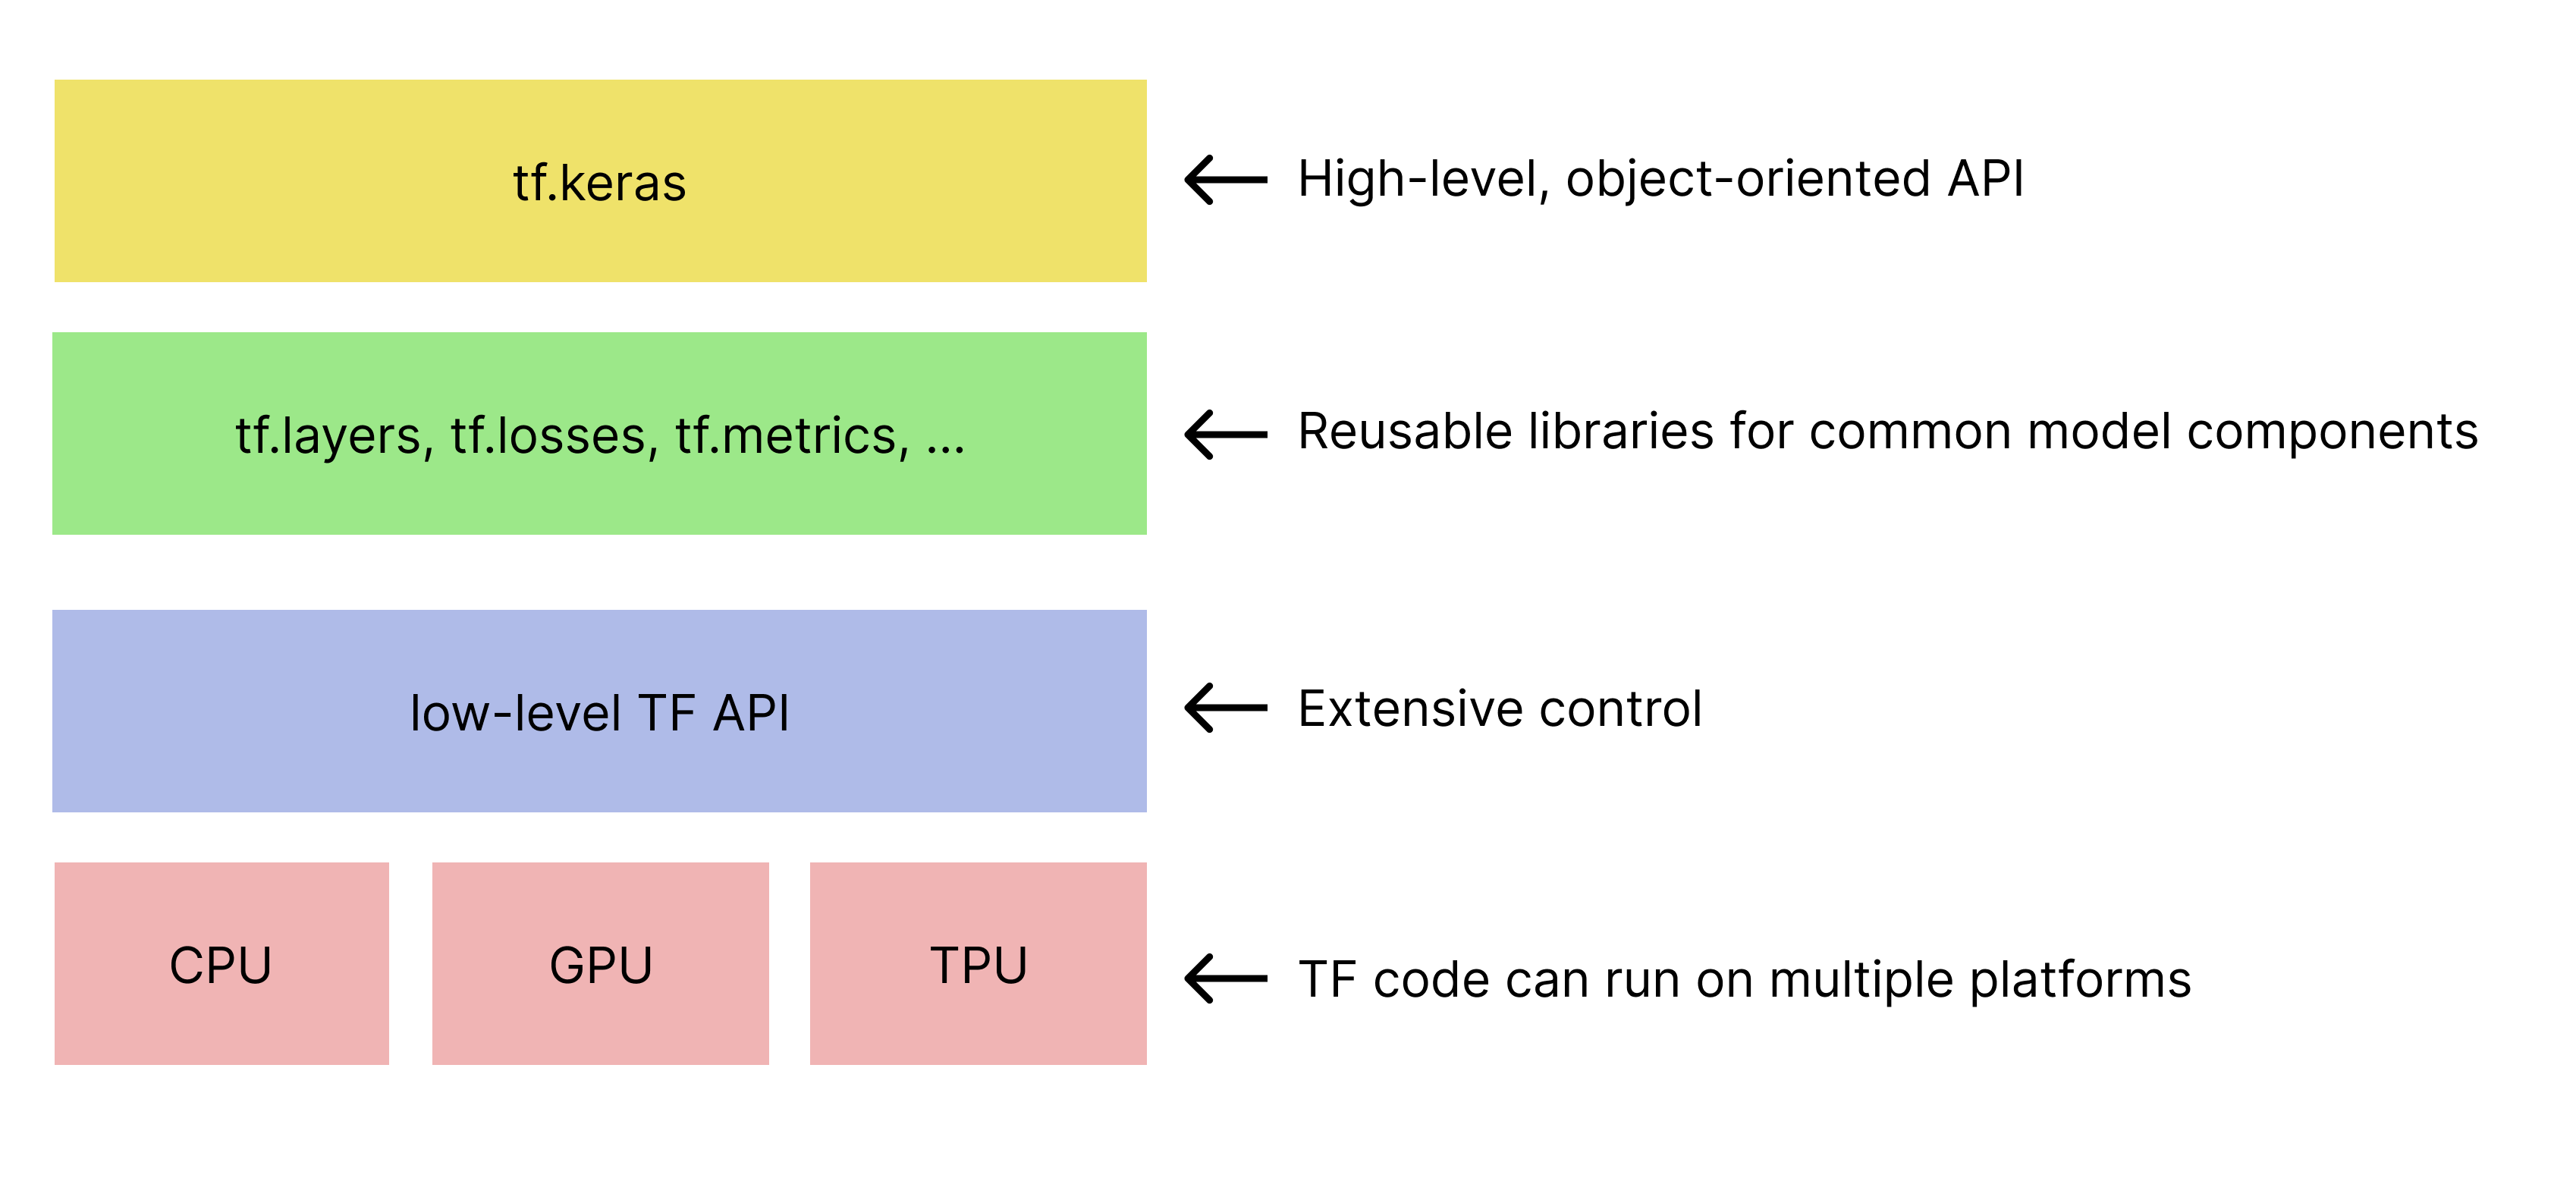 Hierarquia simplificada de kits de ferramentas do TensorFlow. 
   A API tf.keras está na parte superior.